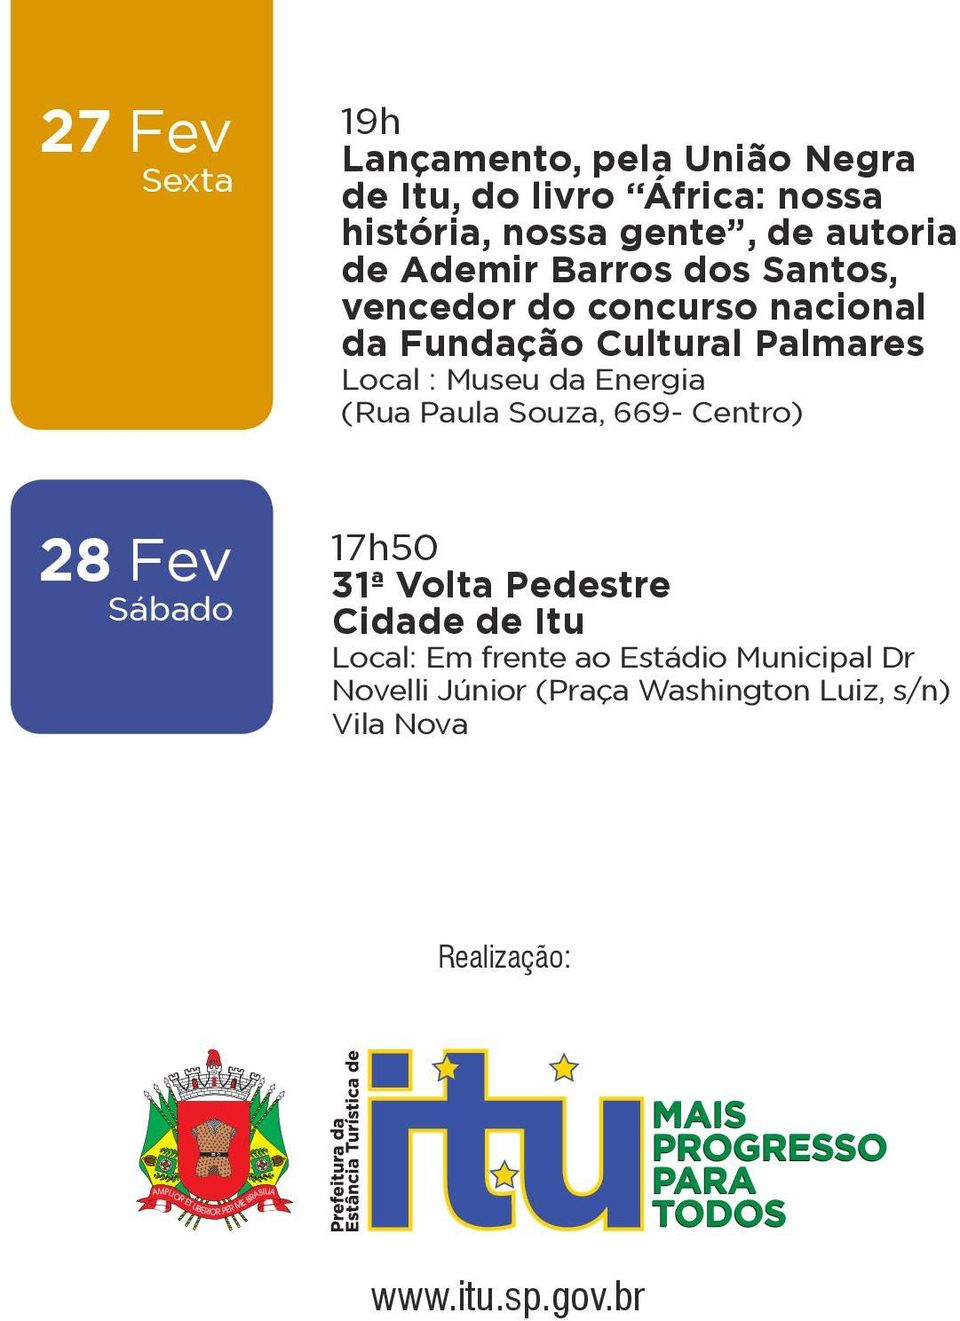 Museu da Energia (Rua Paula Souza, 669- Centro) 28 Fev Sábado 17h50 31ª Volta Pedestre Cidade de Itu Local: